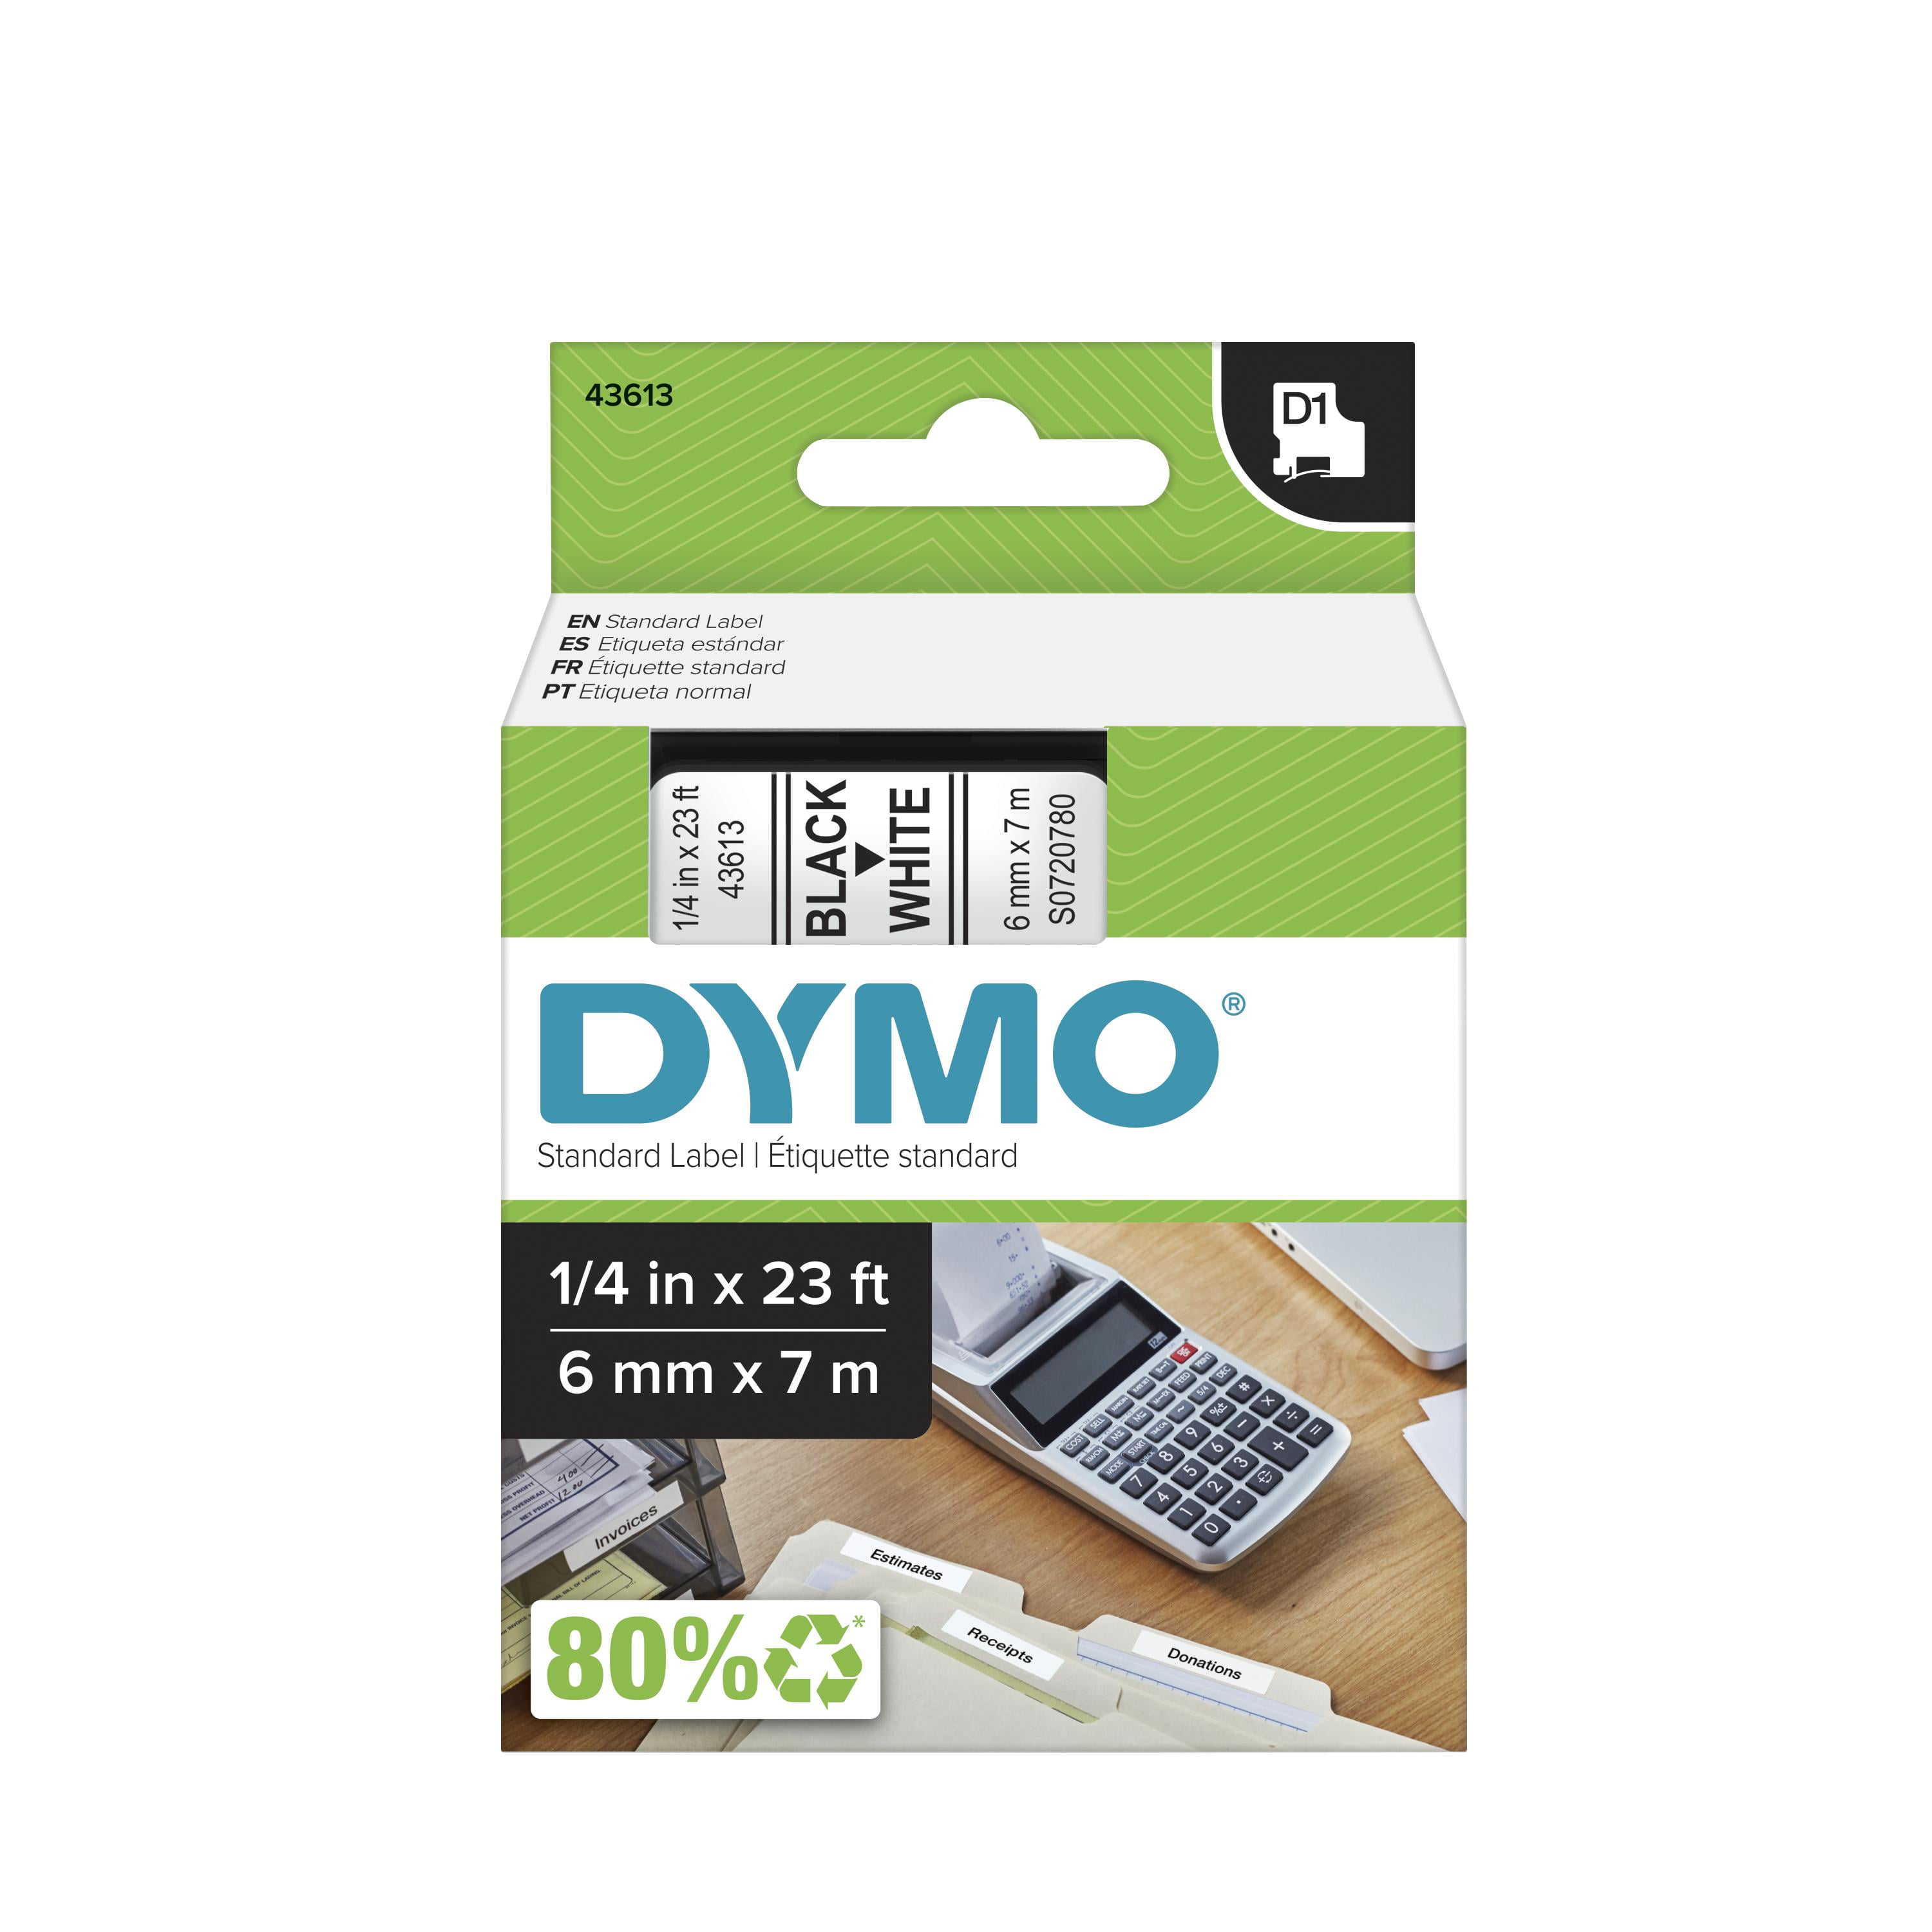 Dymo Dymo Tape / Coloured 9 mm x 3 mm White on Black Pack of 3 